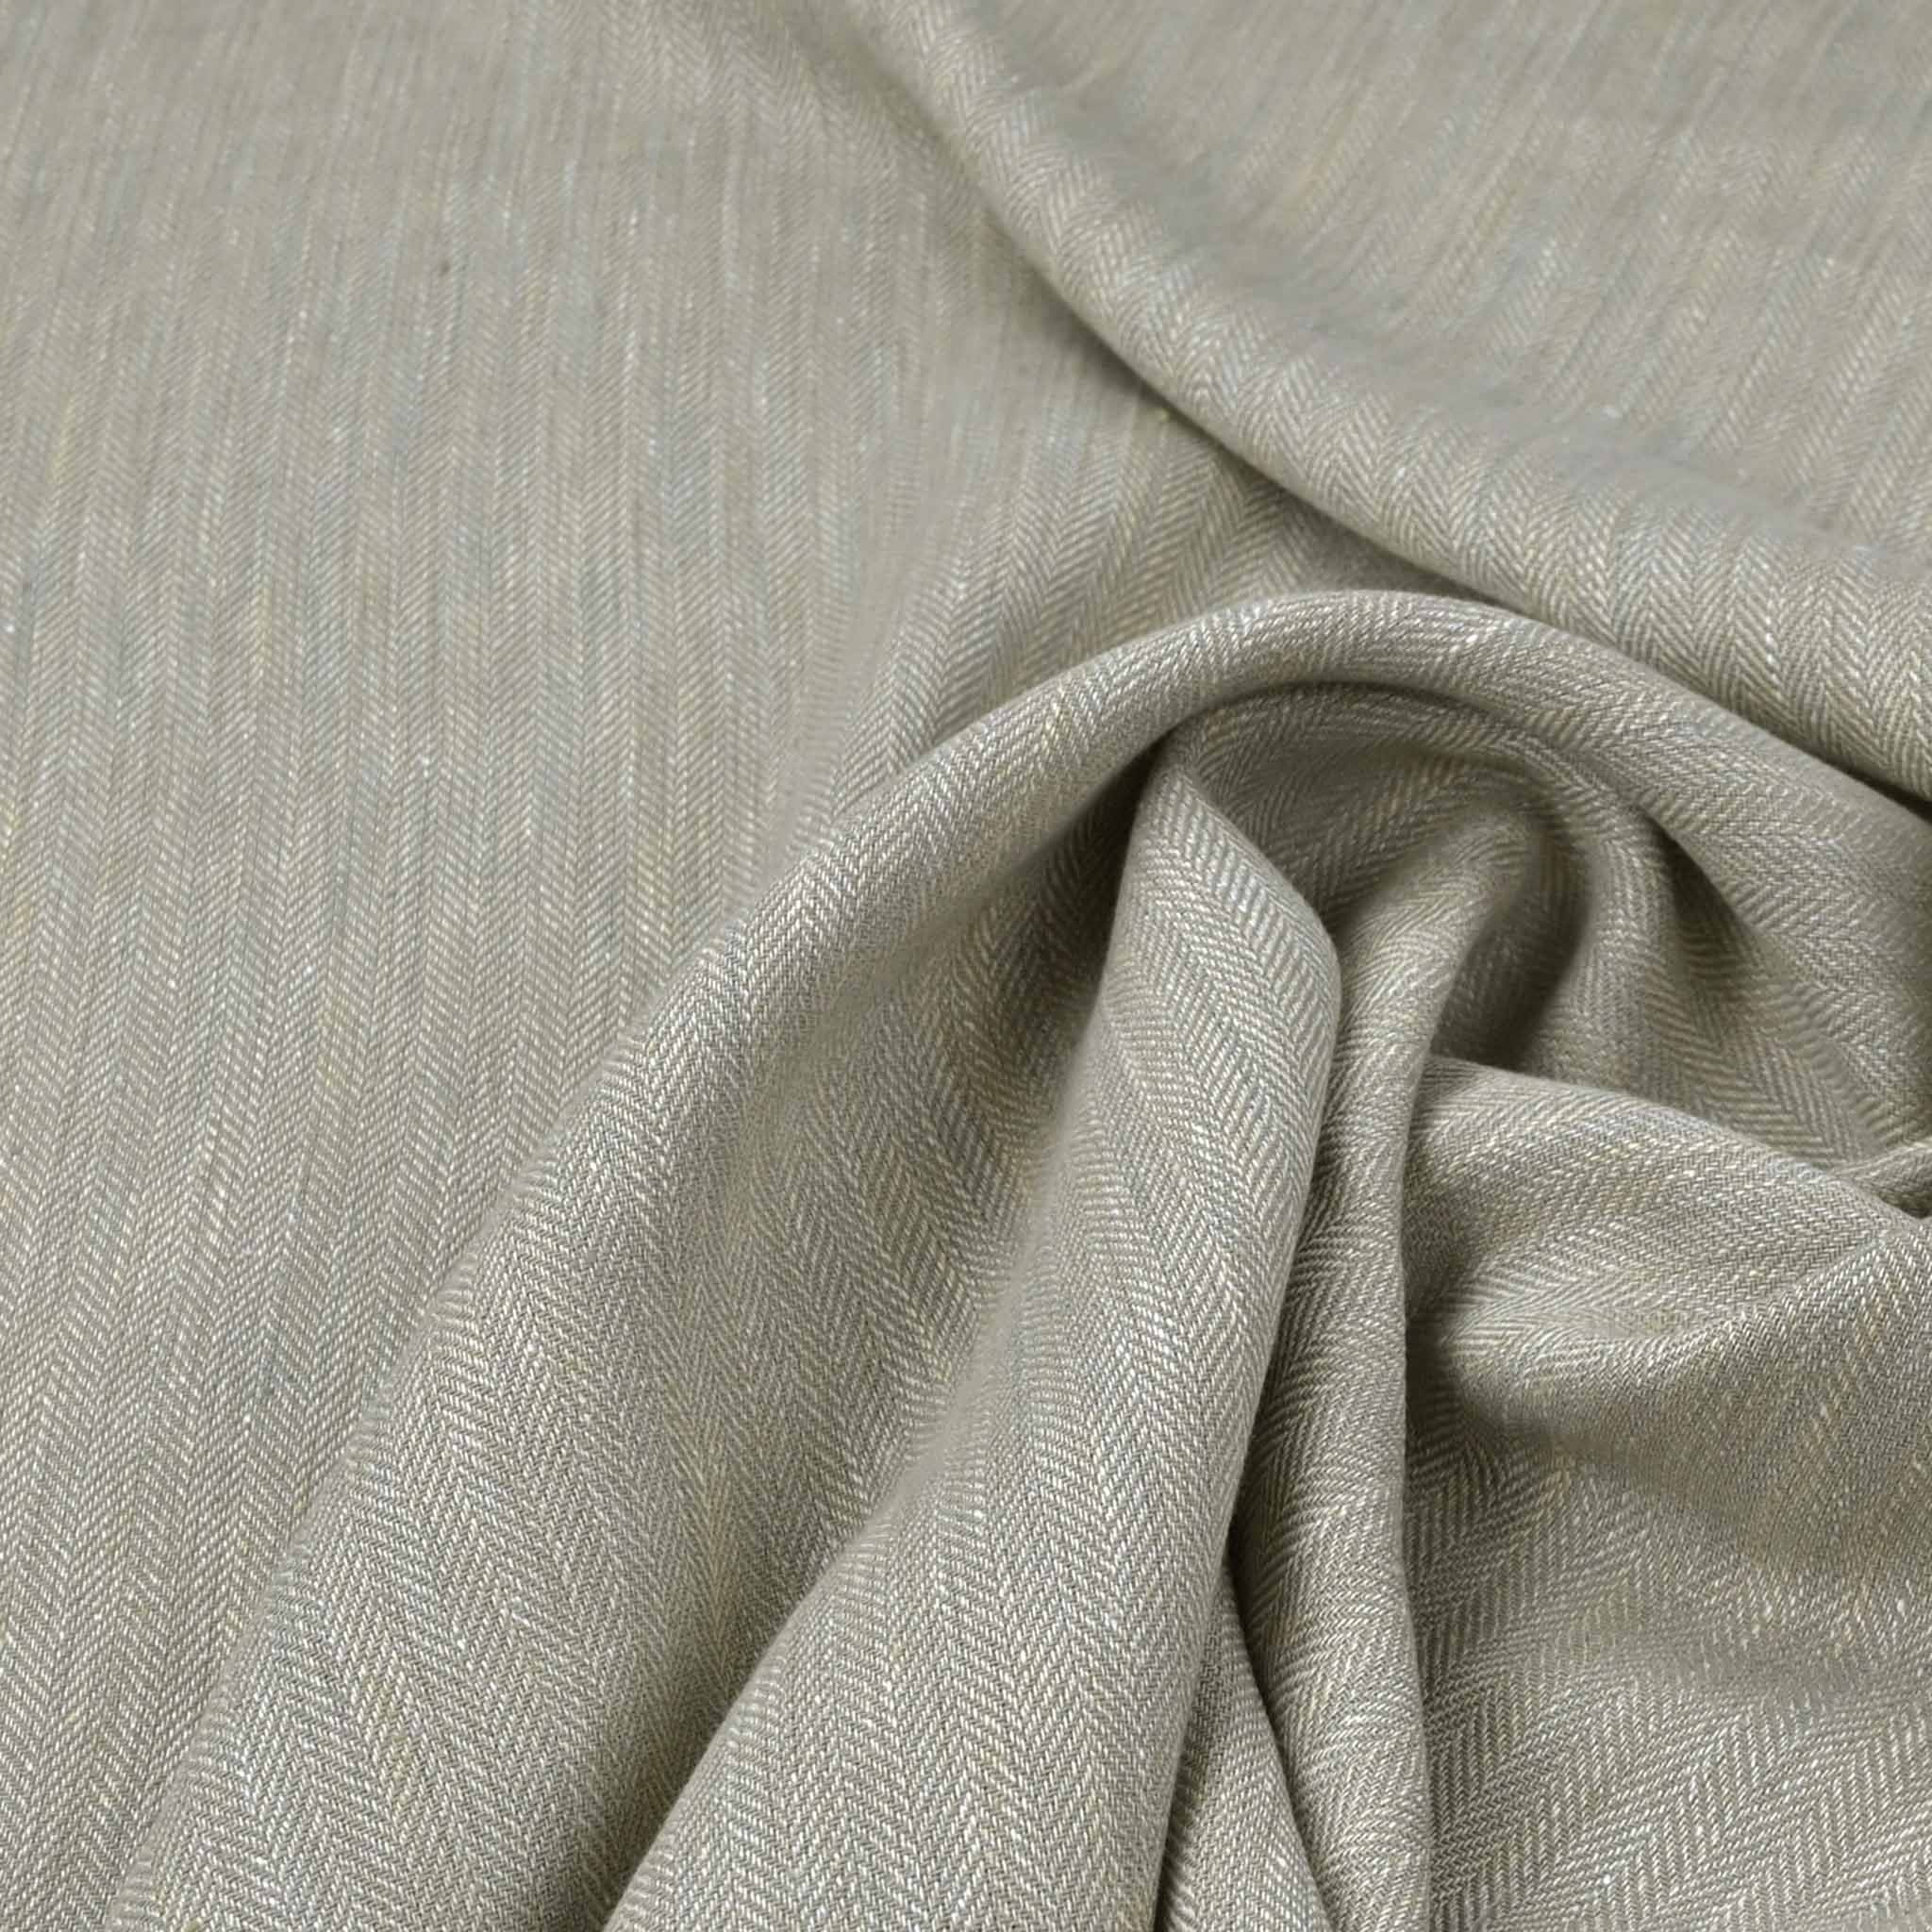 Taupe Herringbone Linen Fabric 99522